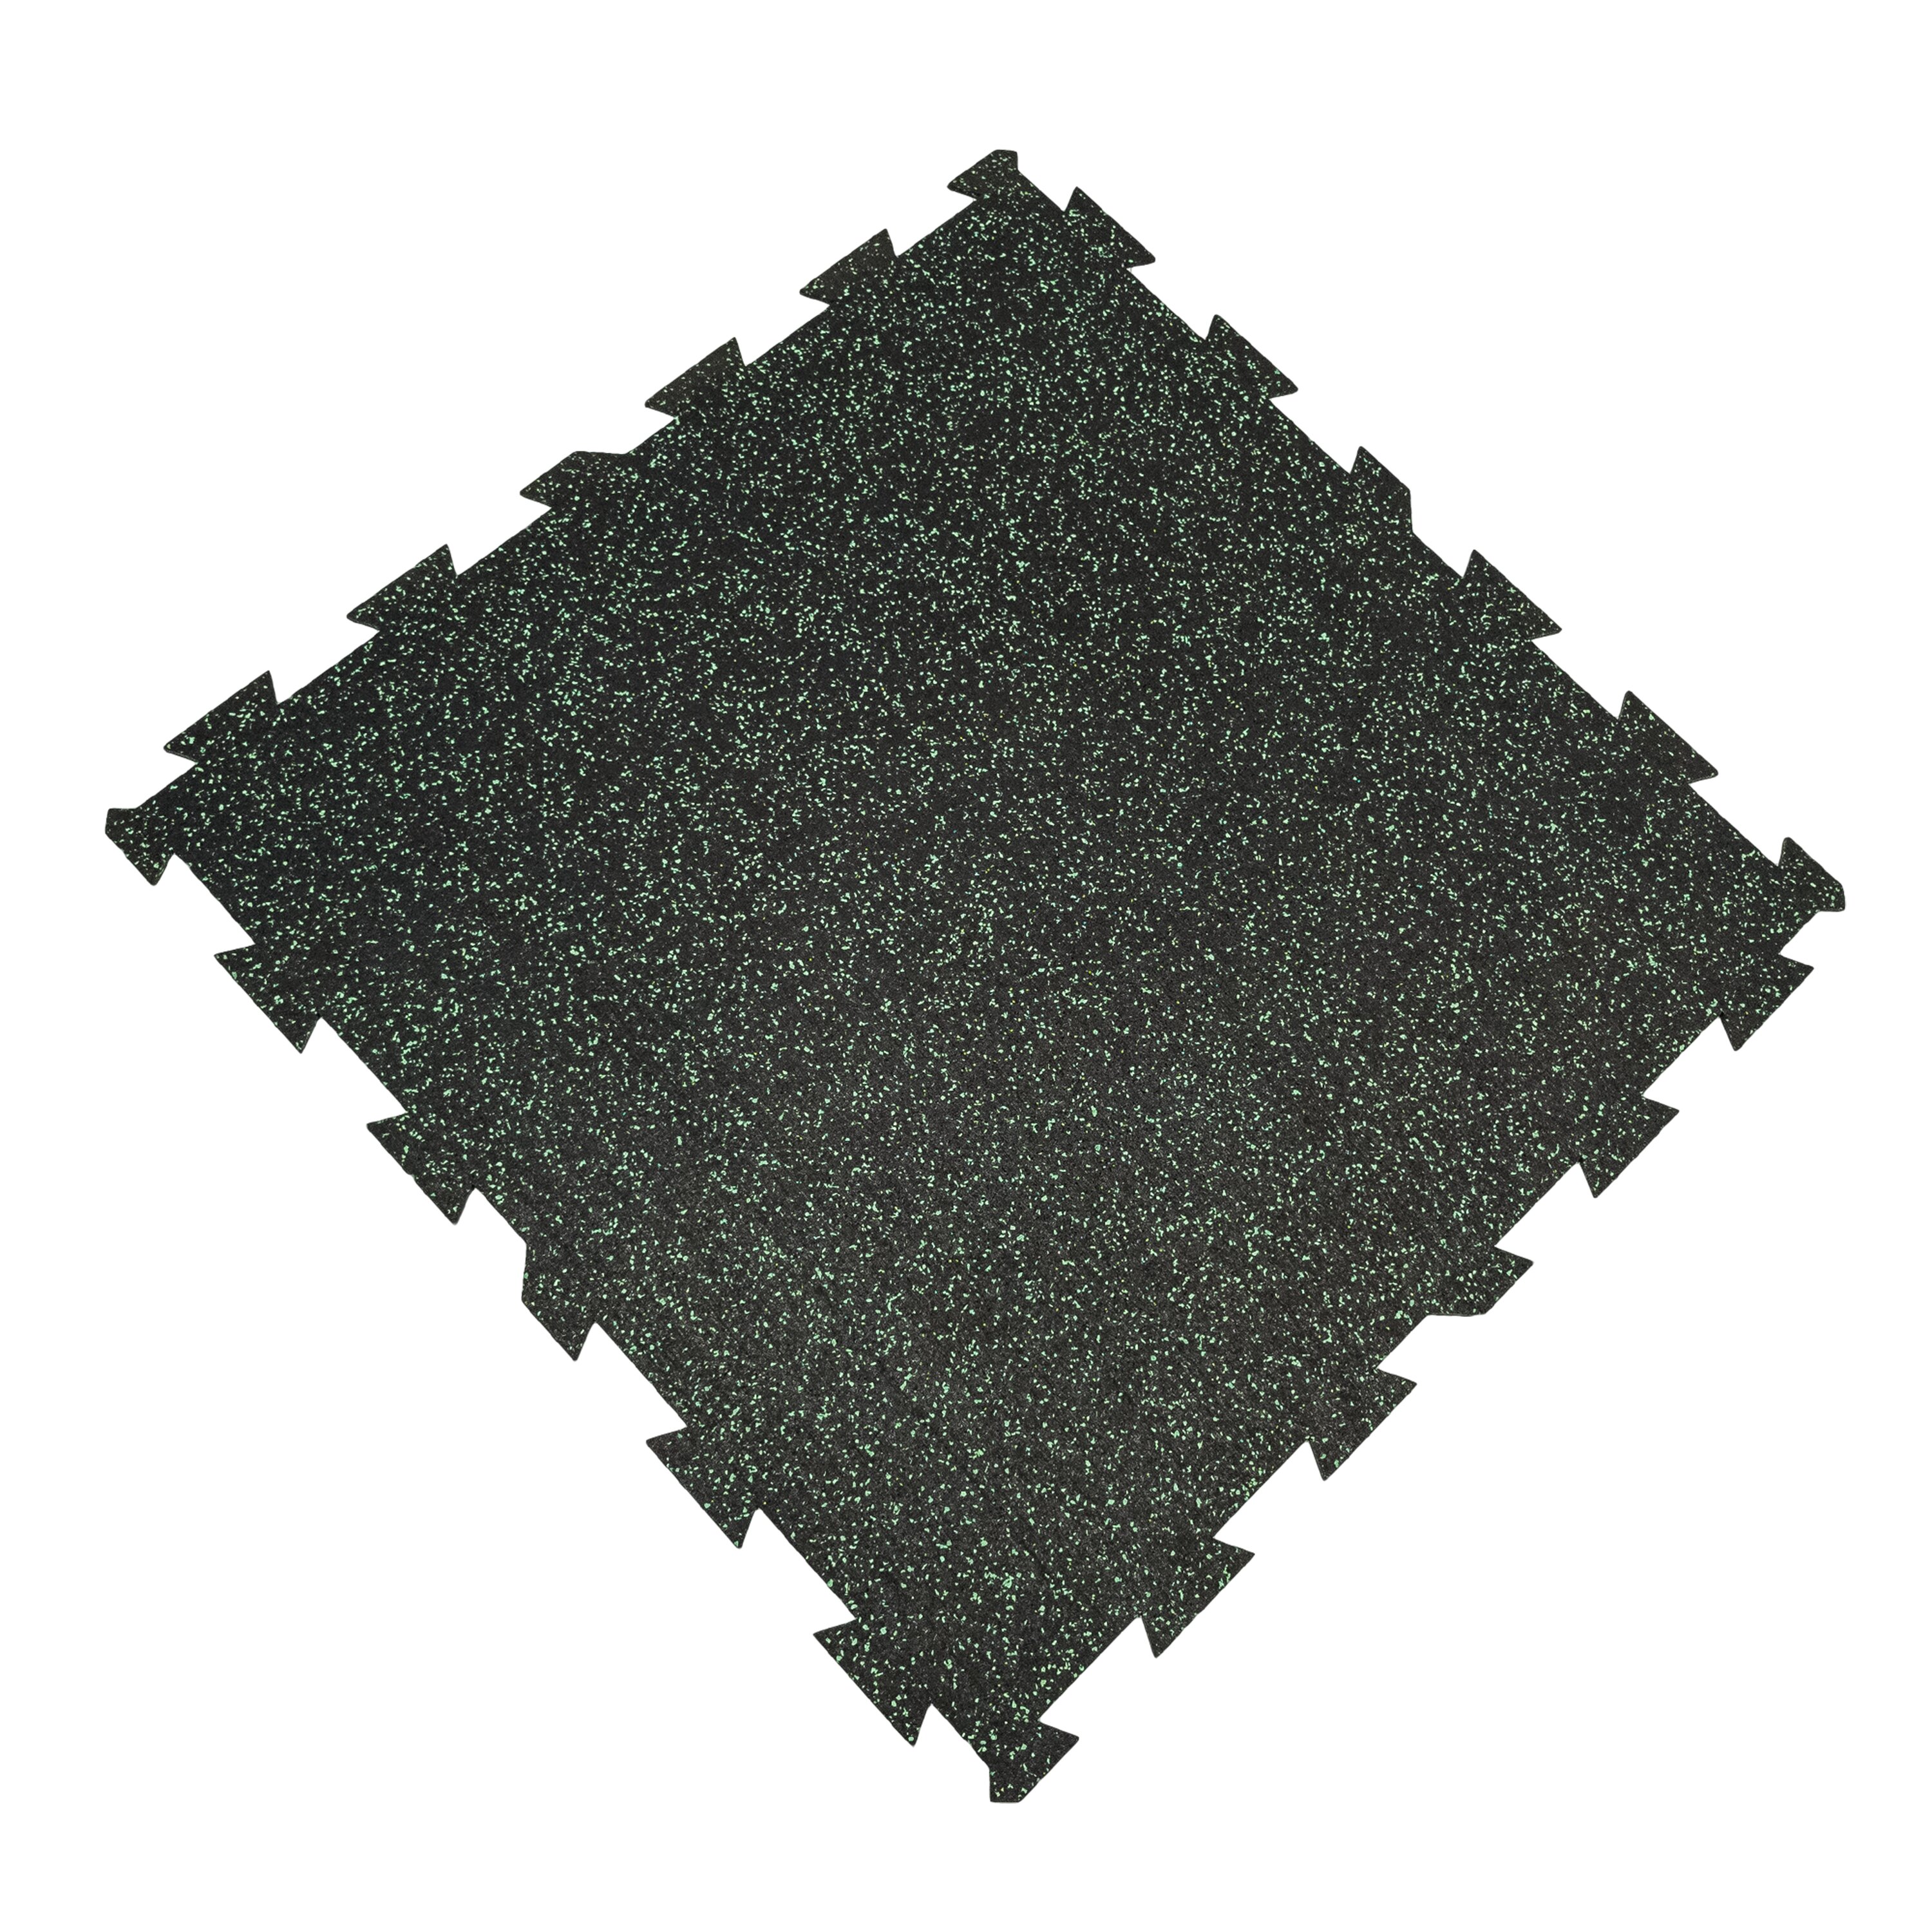 Čierno-zelená gumová modulová puzzle dlažba (stred) FLOMA FitFlo SF1050 - dĺžka 100 cm, šírka 100 cm, výška 1 cm